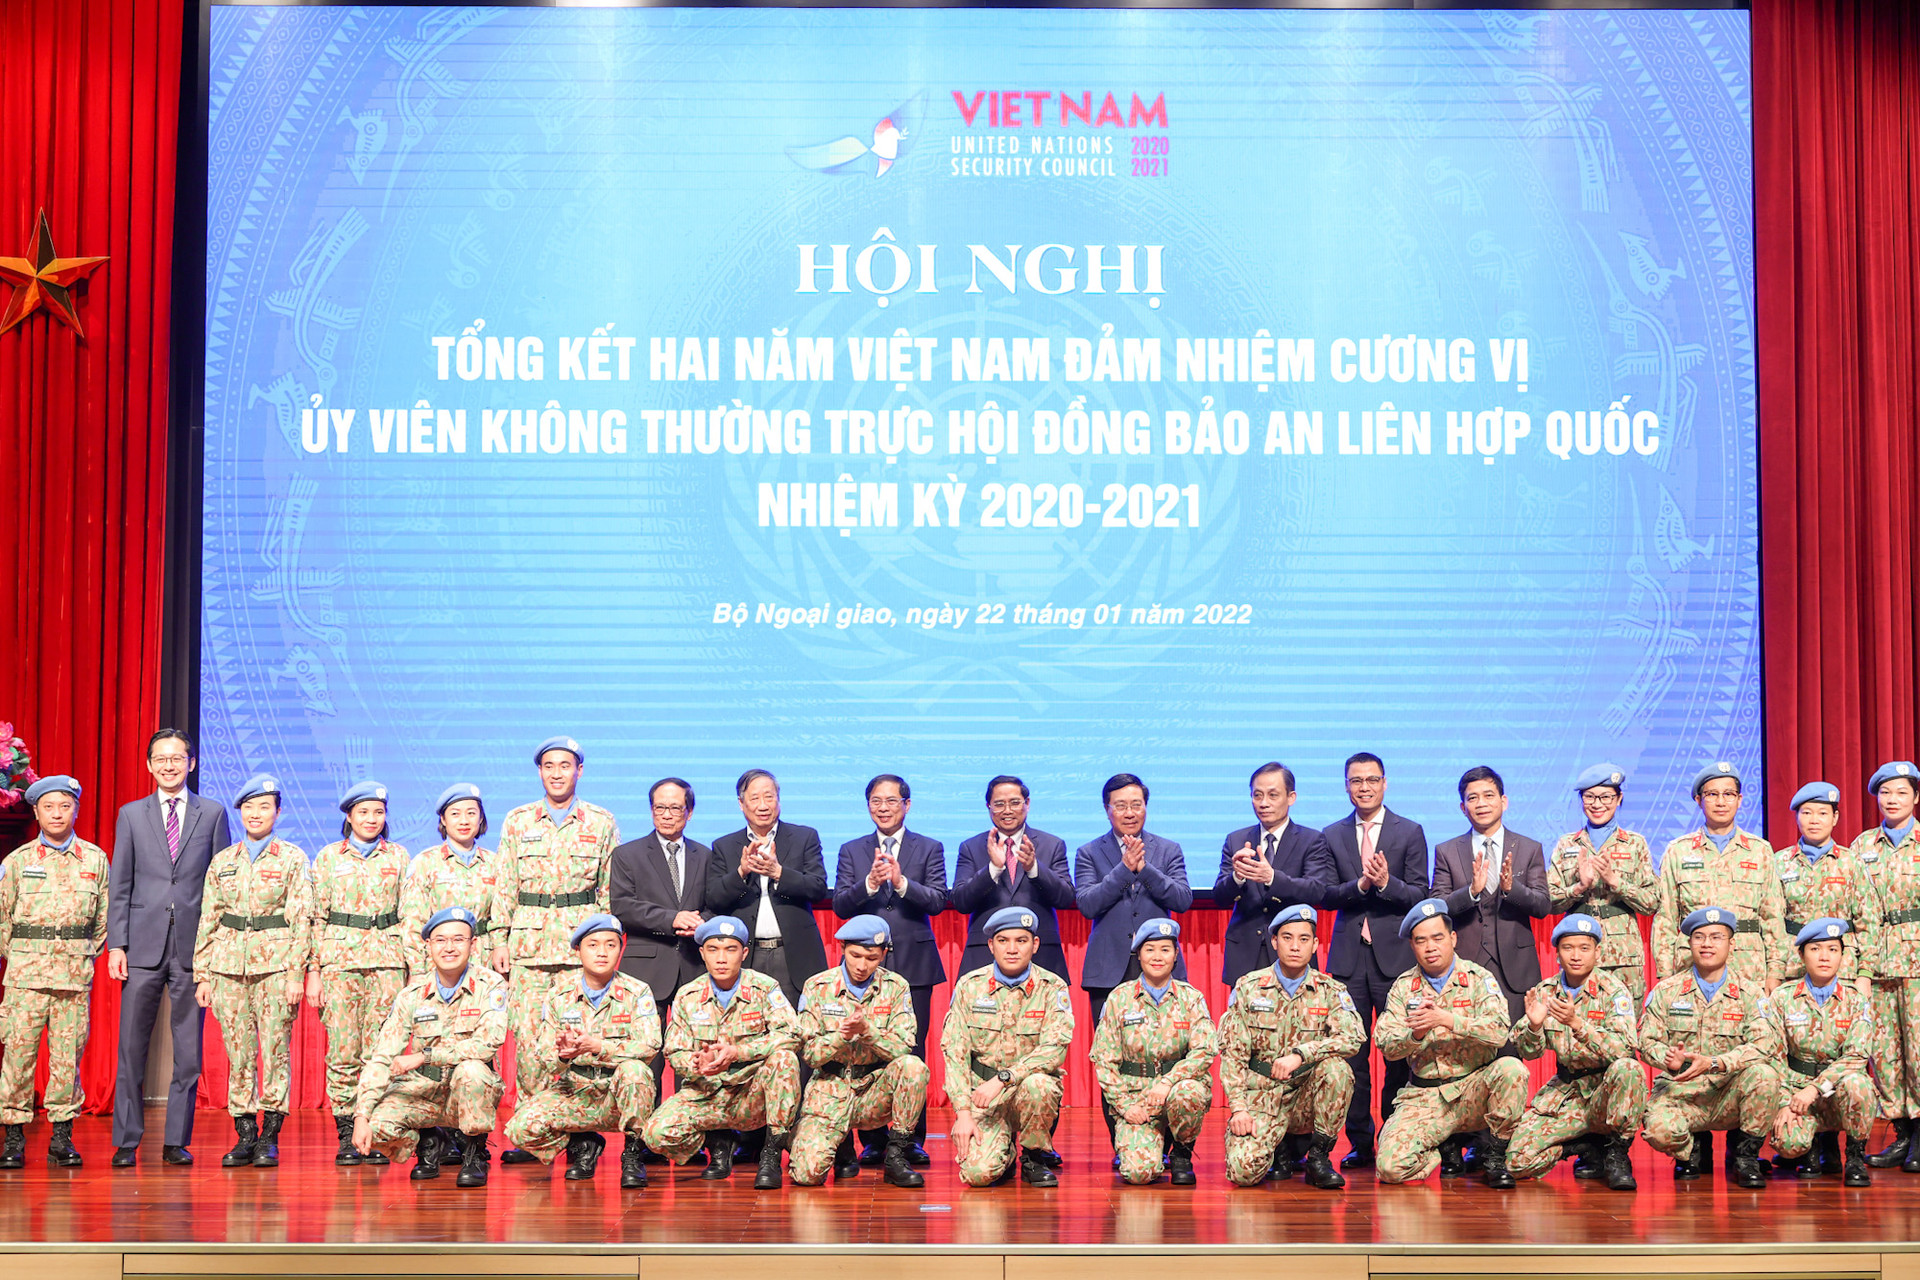 Chùm ảnh: Thủ tướng dự Hội nghị tổng kết 2 năm Việt Nam đảm nhiệm nhiệm vụ tại Hội đồng Bảo an LHQ - Ảnh 10.